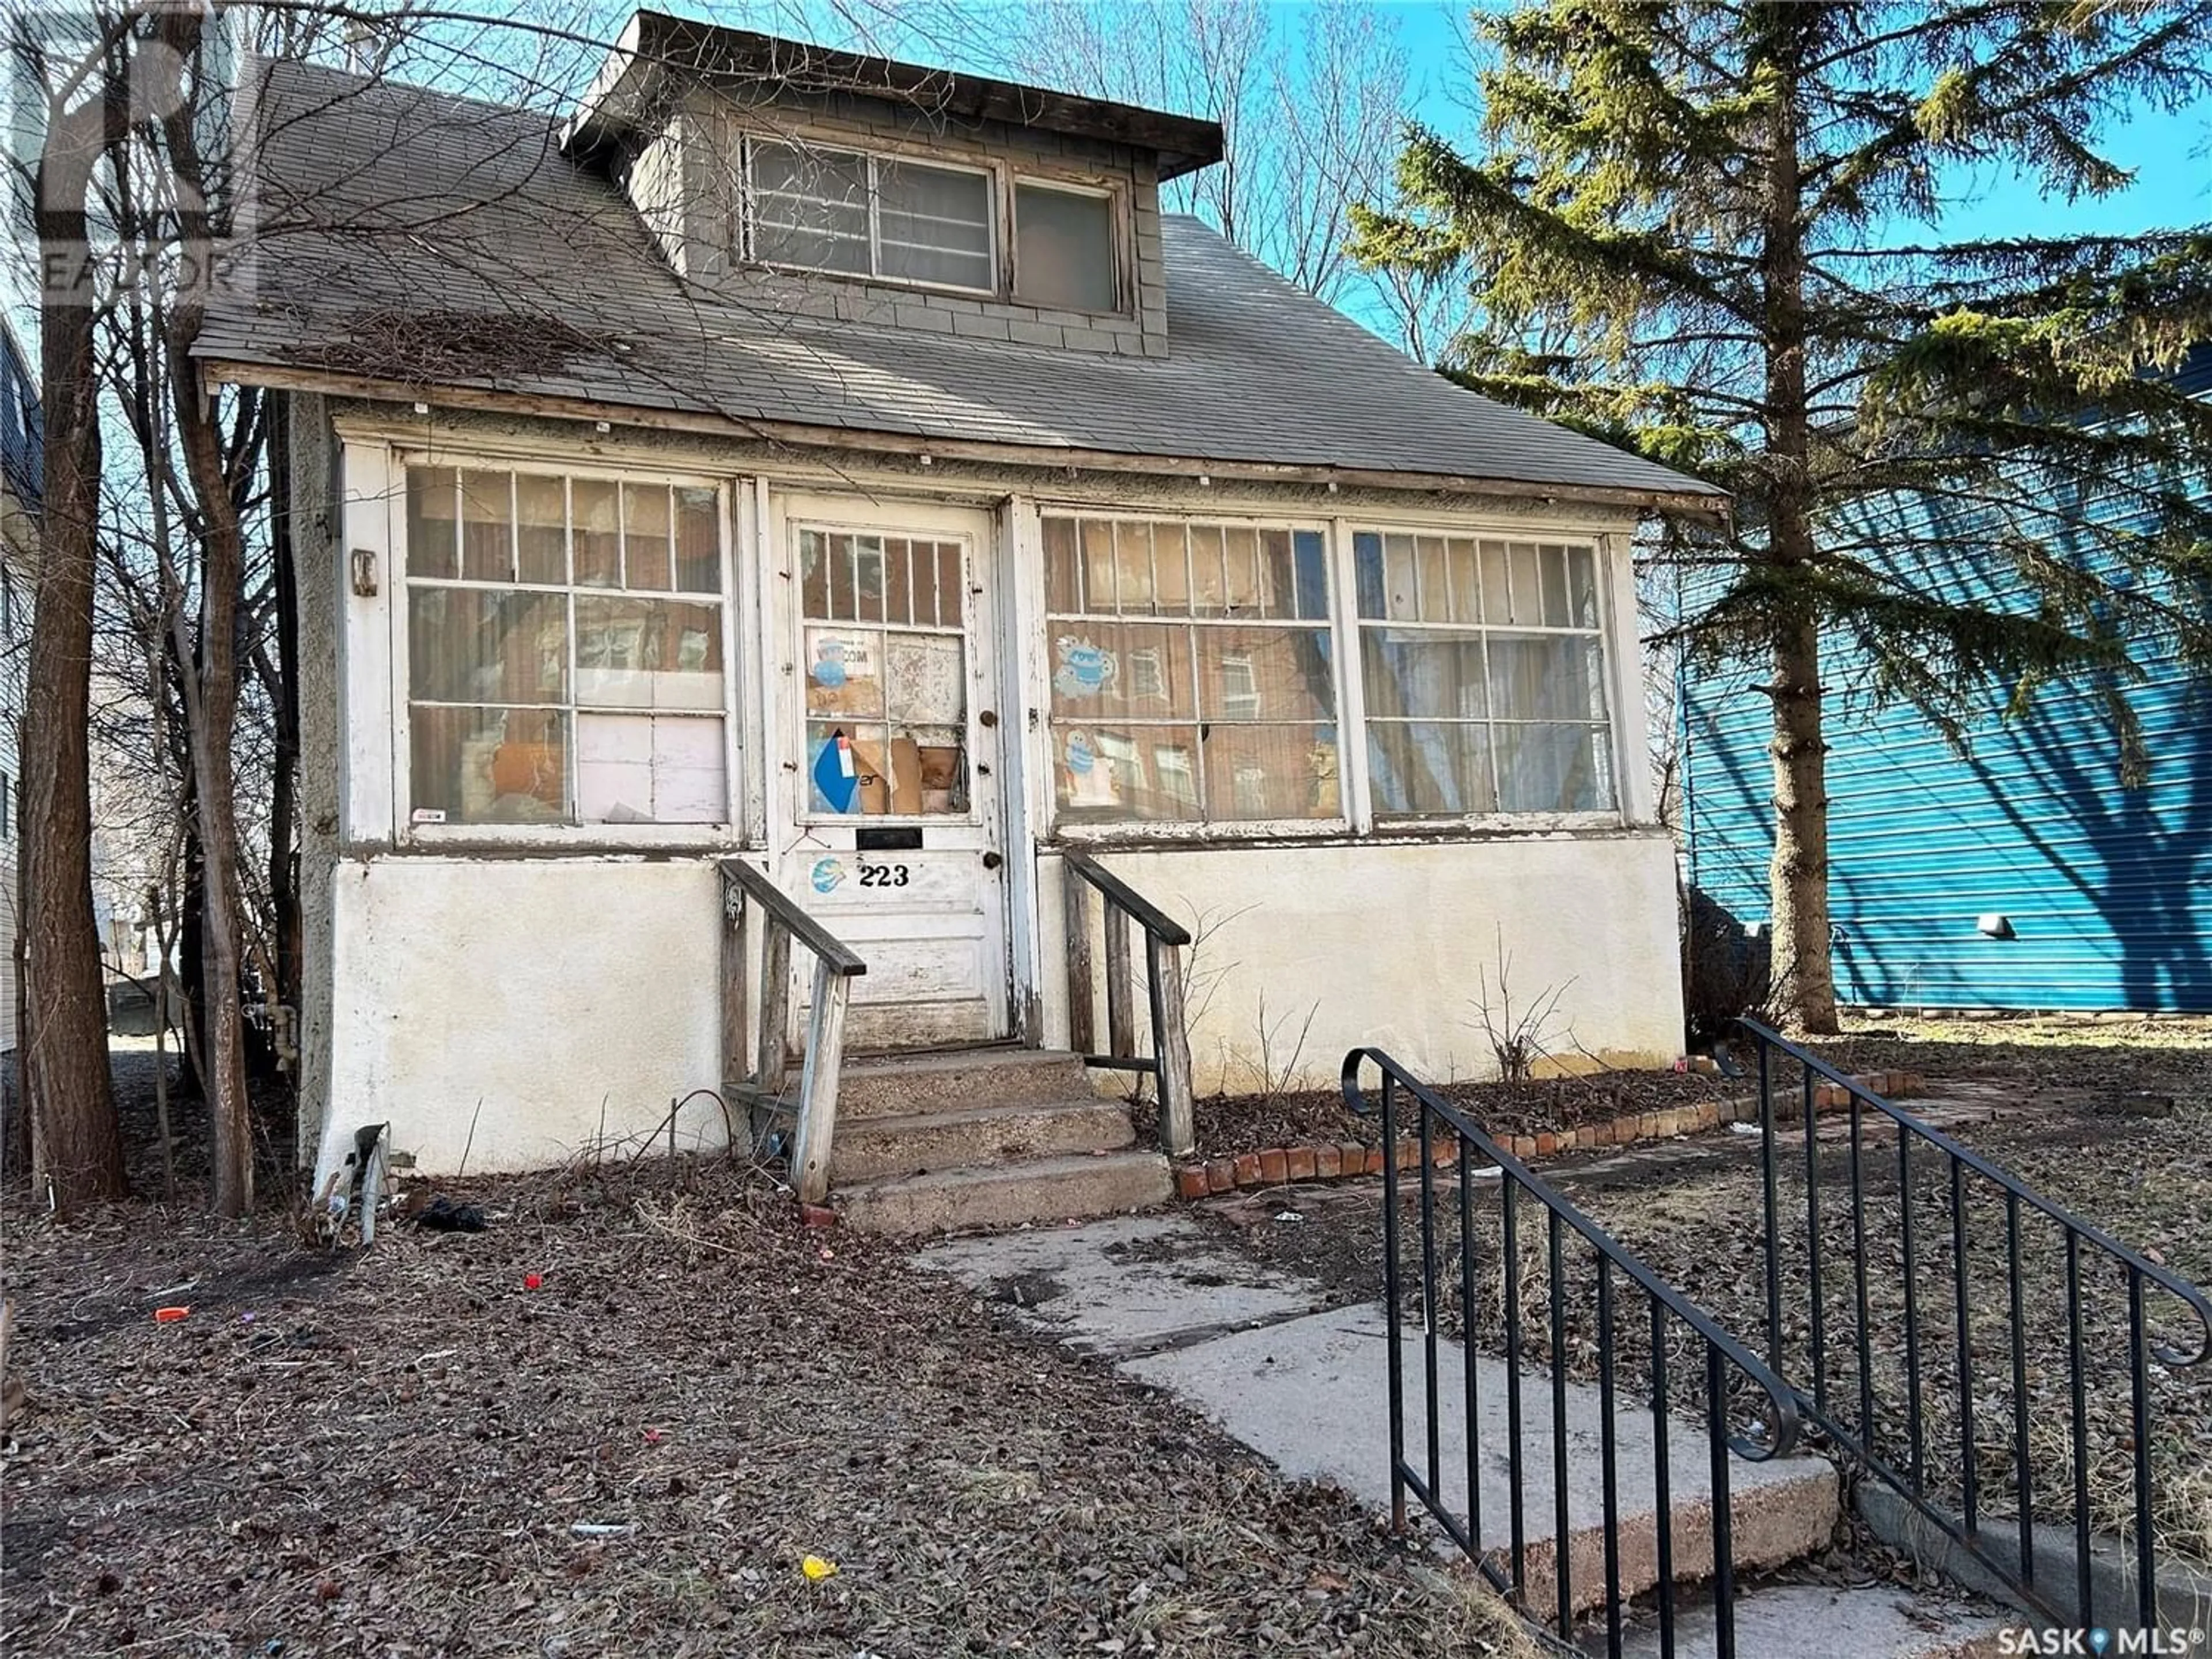 Frontside or backside of a home for 223 R AVENUE S, Saskatoon Saskatchewan S7M2Y9